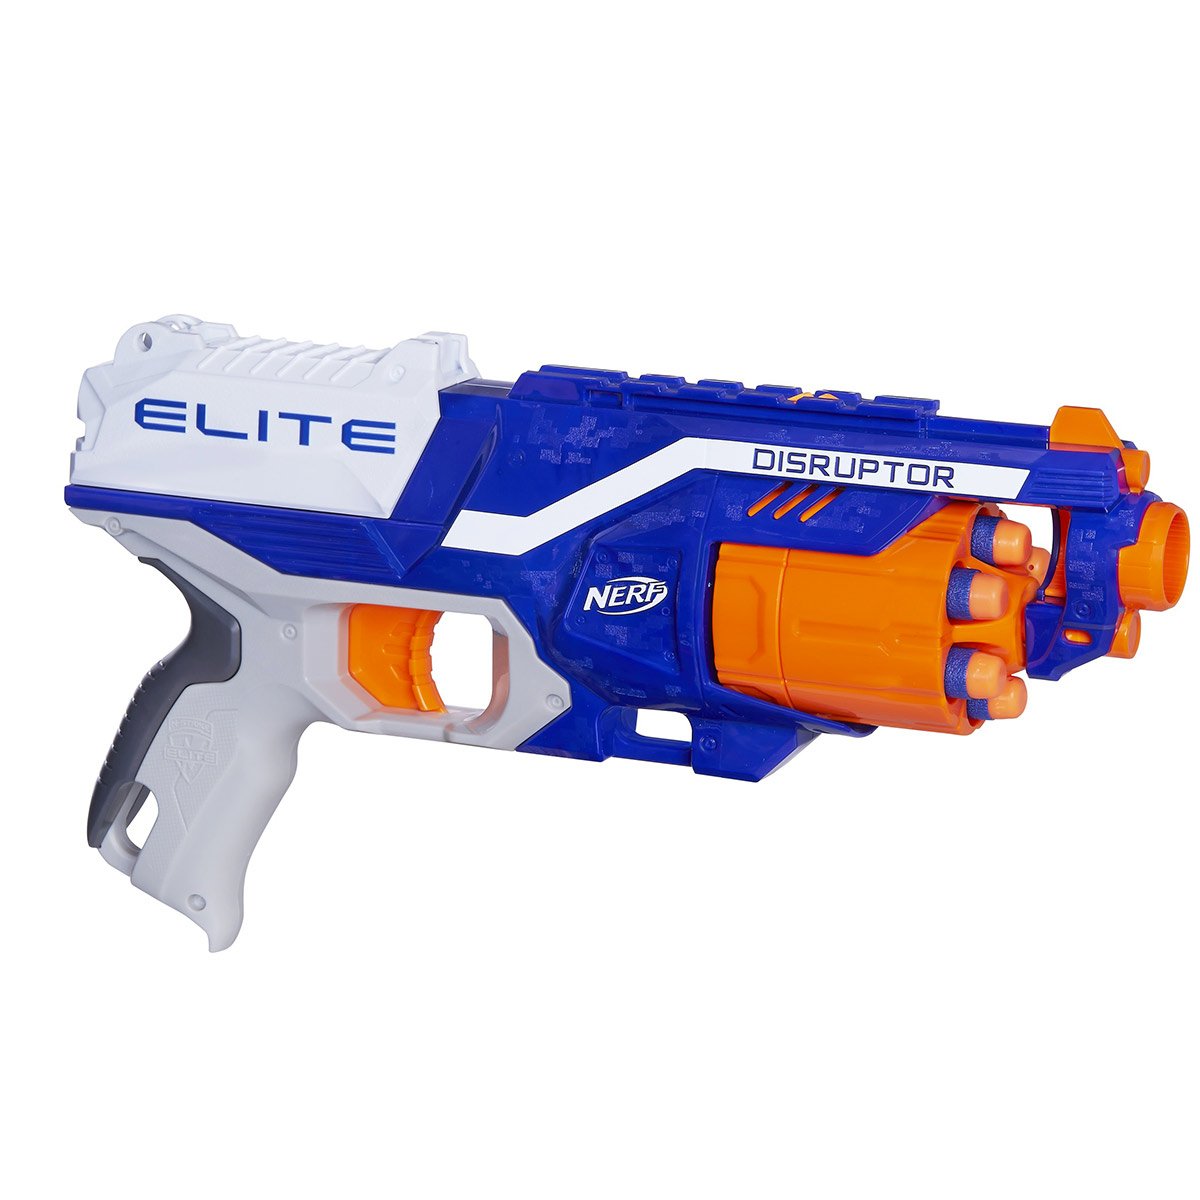 Pistolet Nerf Elite 2.0 Prospect QS-4 - La Grande Récré